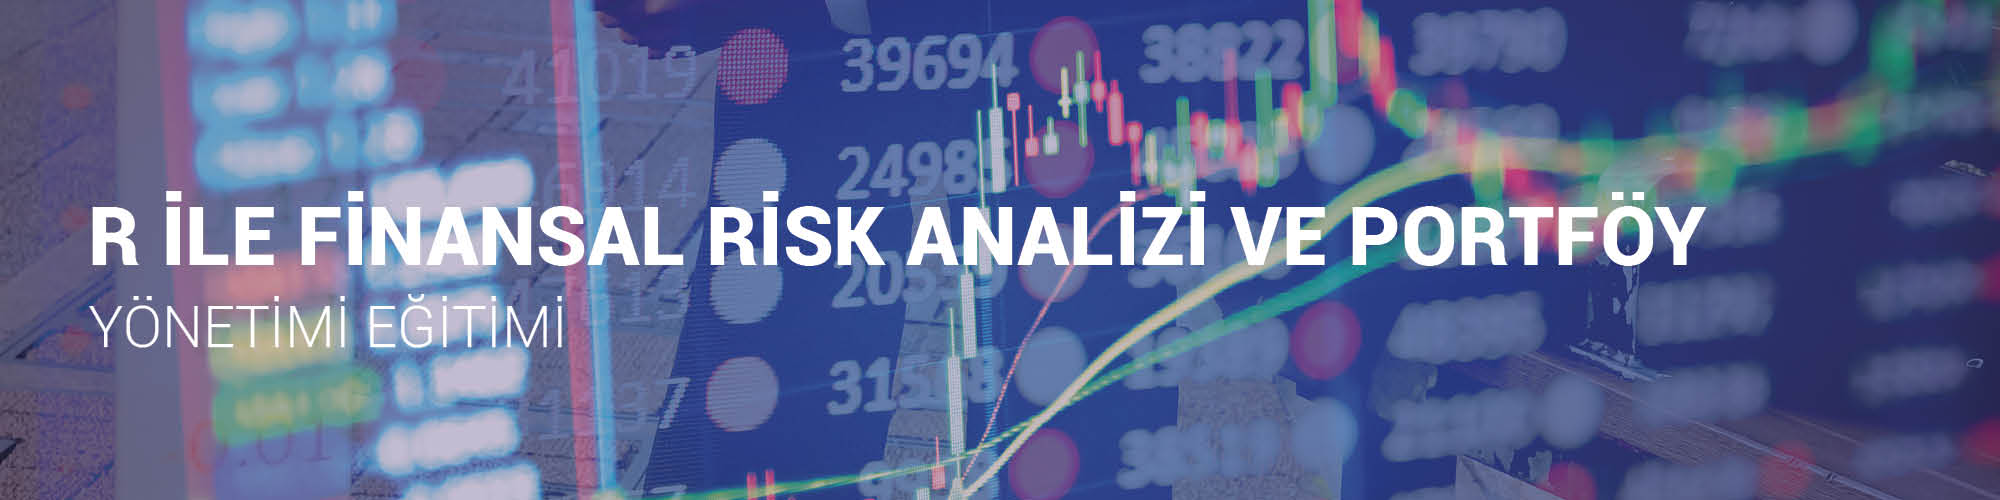 R ile Finansal Risk Analizi ve Portföy Yönetimi Eğitimi